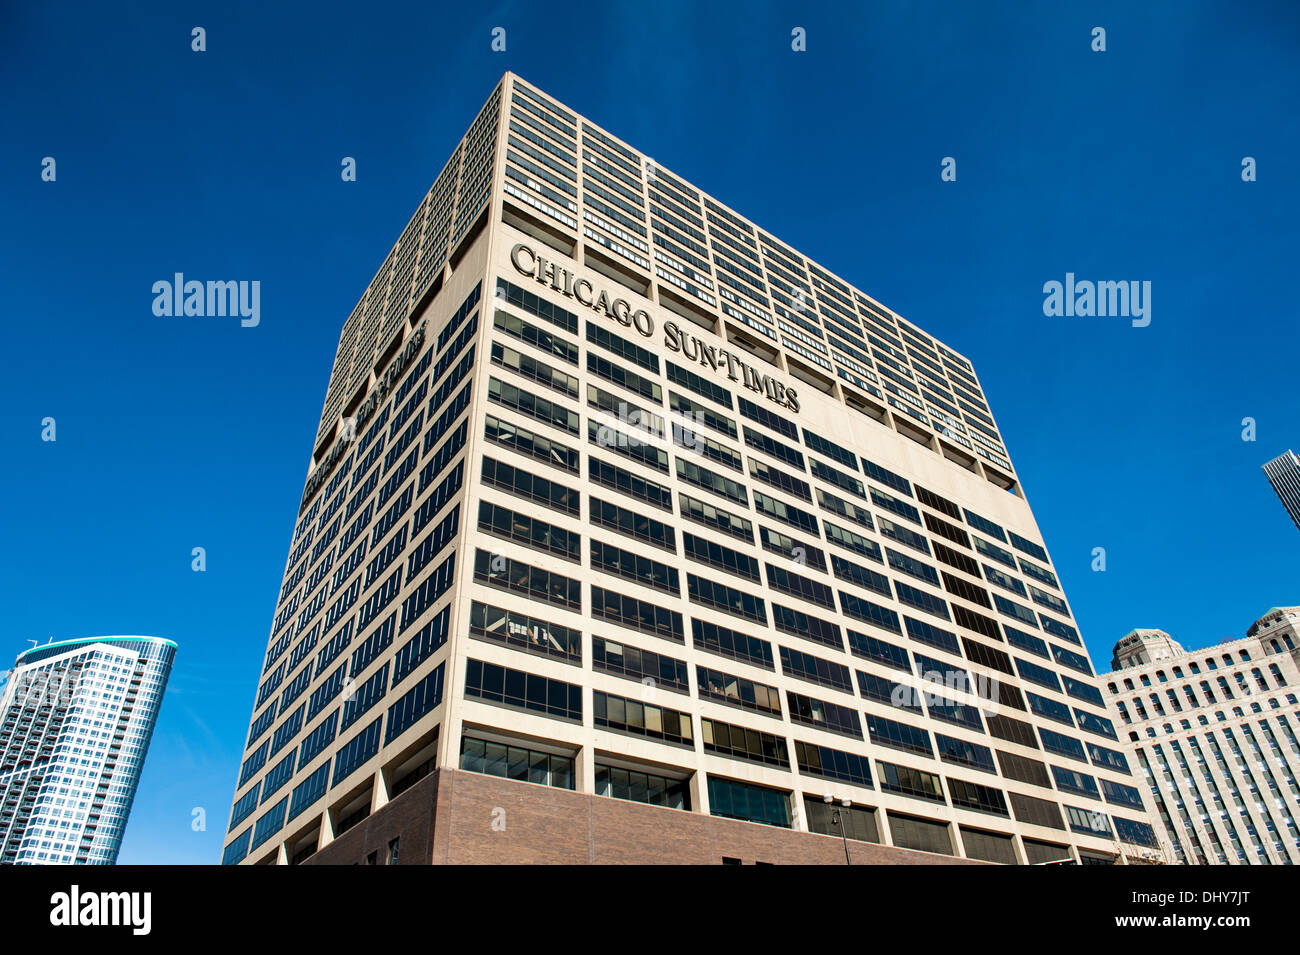 CHICAGO, IL - 13 novembre: Chicago Apparel è il centro attuale casa del Chicago Sun-times, visto in Chicago, Illinois. Foto Stock